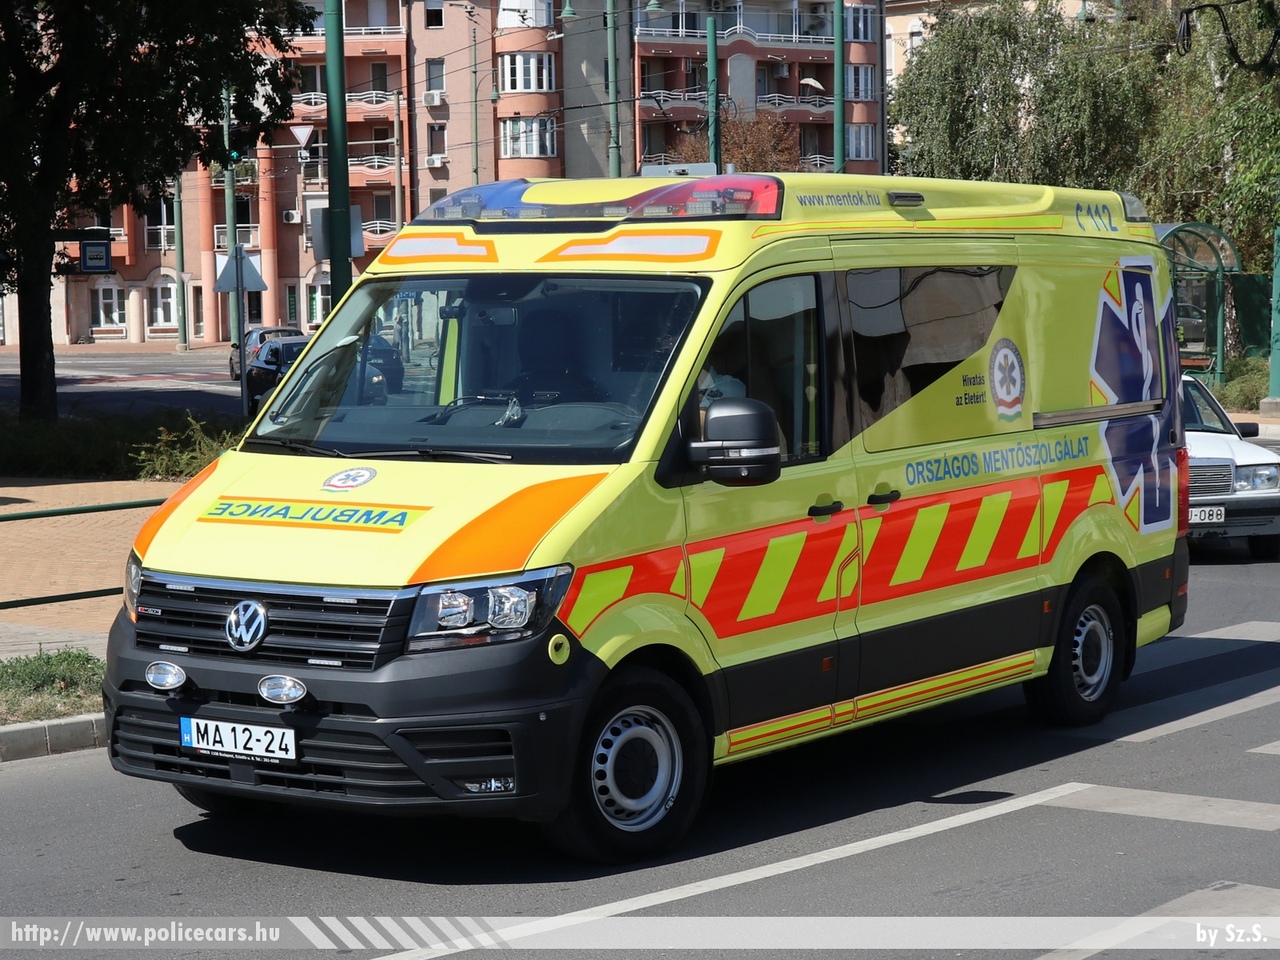 Volkswagen Crafter II Profile, Országos Mentõszolgálat, fotó: Sz.S.
Keywords: magyar Magyarország mentő mentőautó OMSZ Hungary hungarian ambulance MA12-24